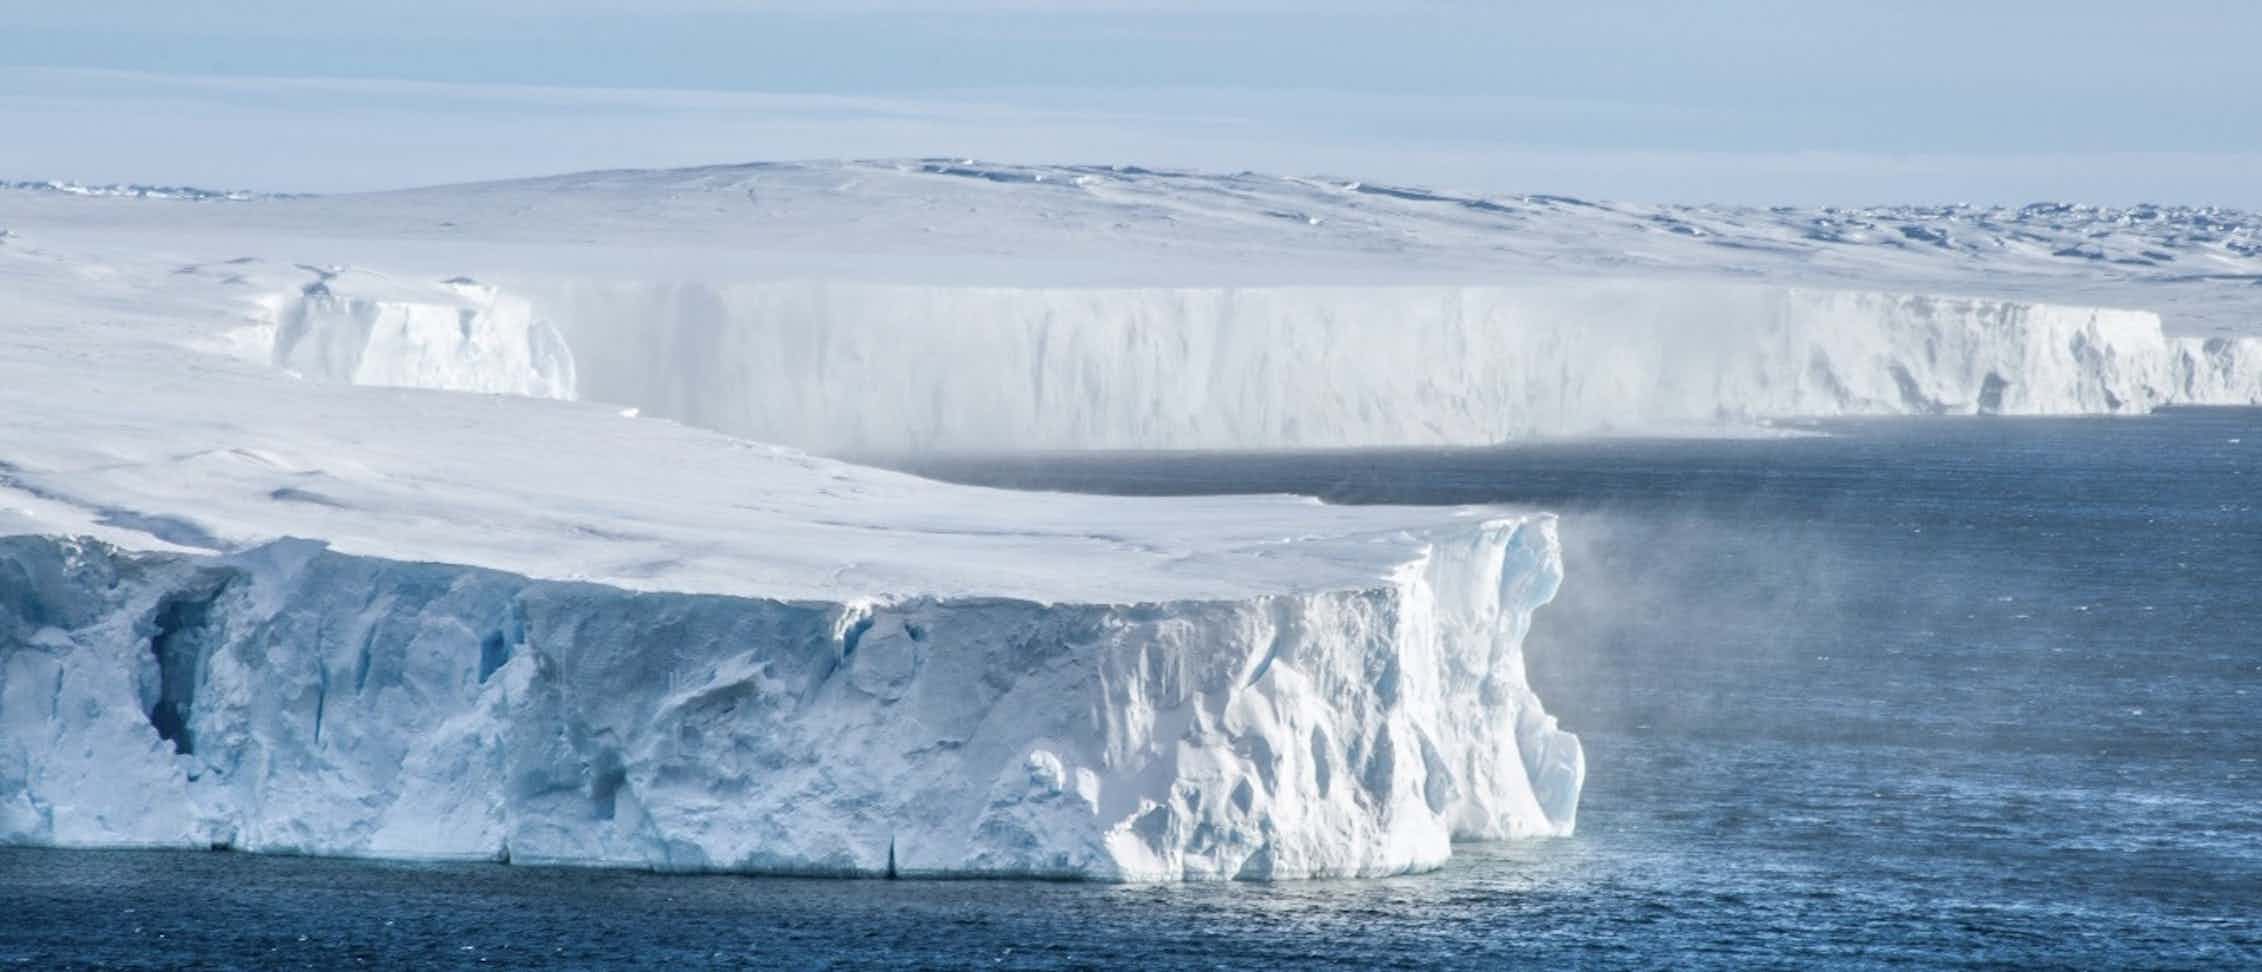 Большой айс. Глобальное потепление в Арктике. Потепление в Арктике. Глабальная потепленение. Всемирное потепление.